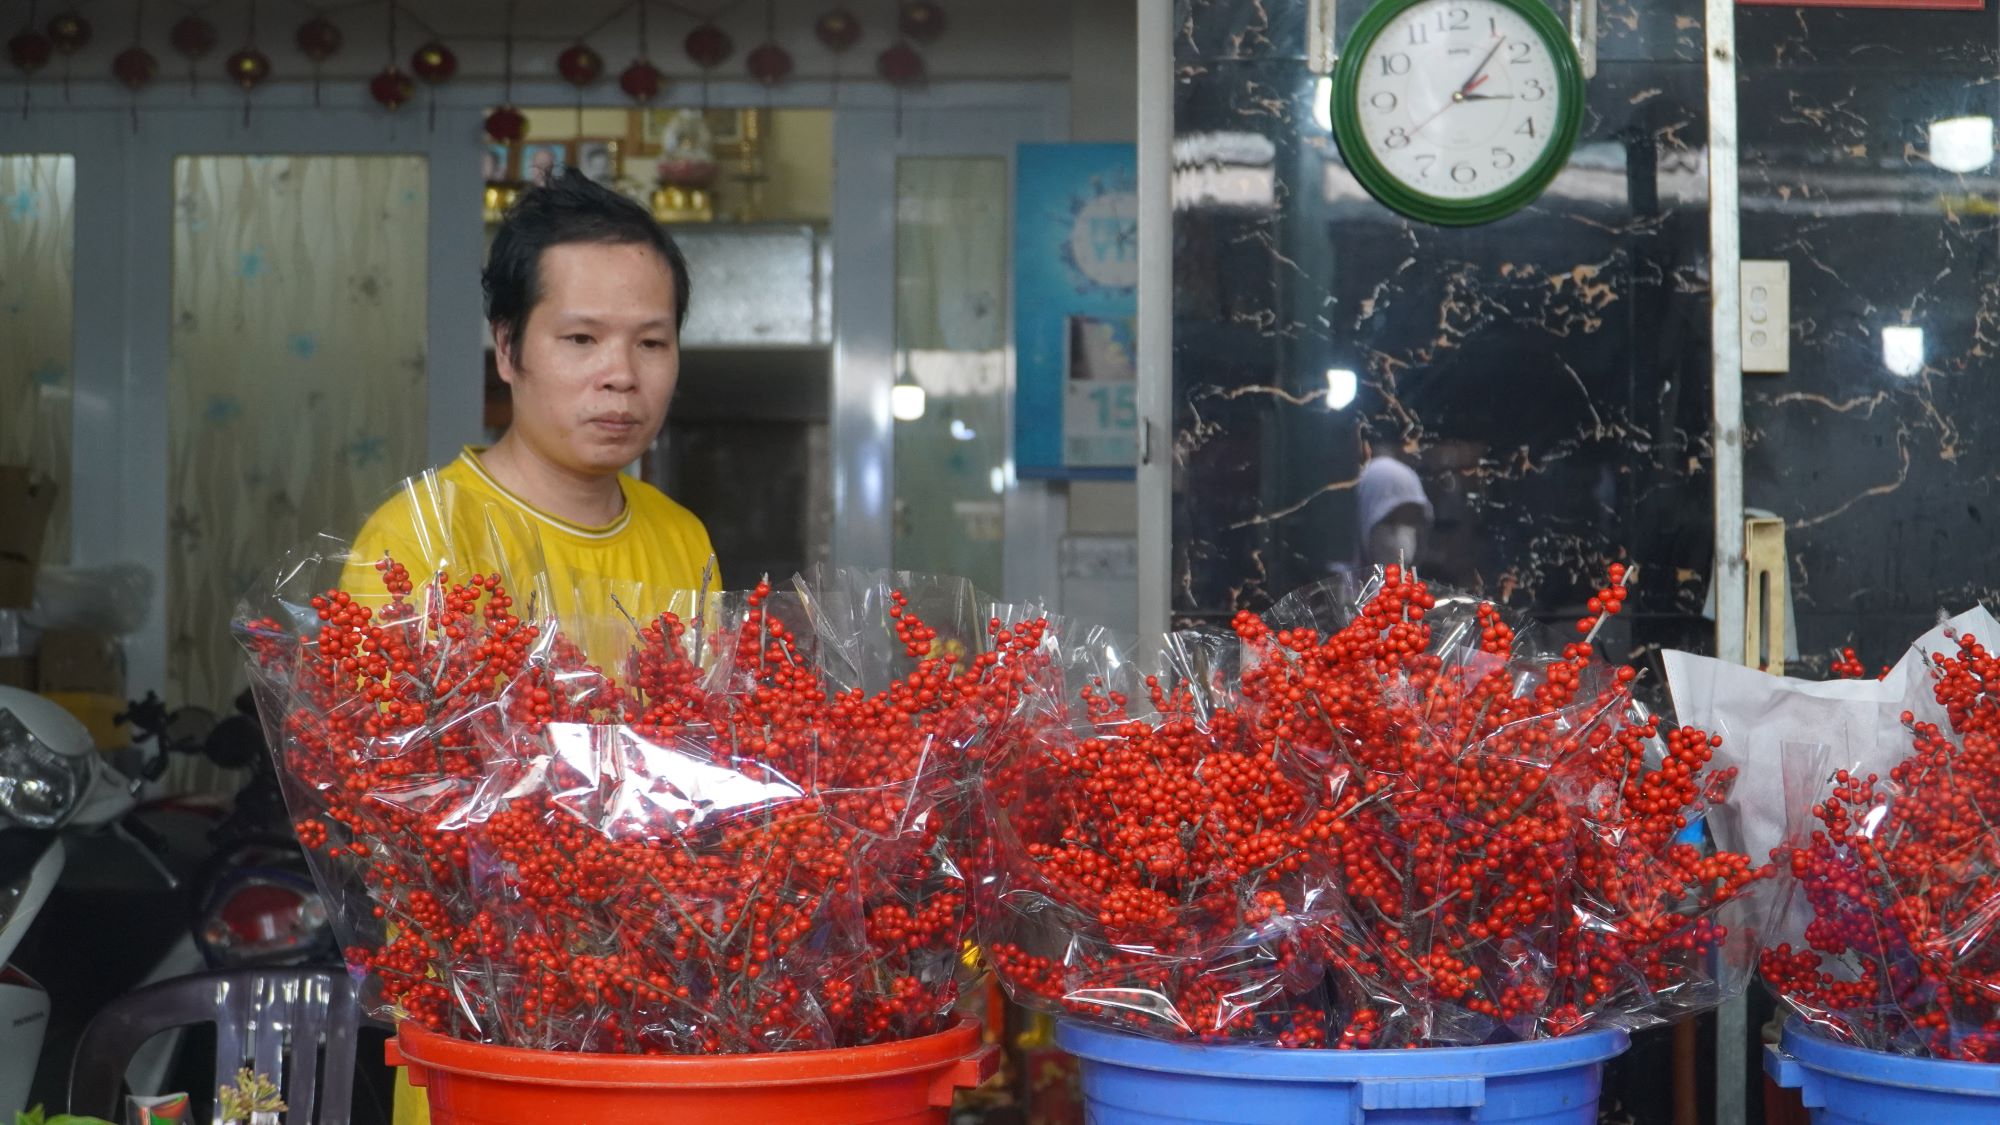 
Chợ hoa tươi đặc sắc giữa Sài thành lên hàng đón Tết- Ảnh 5.